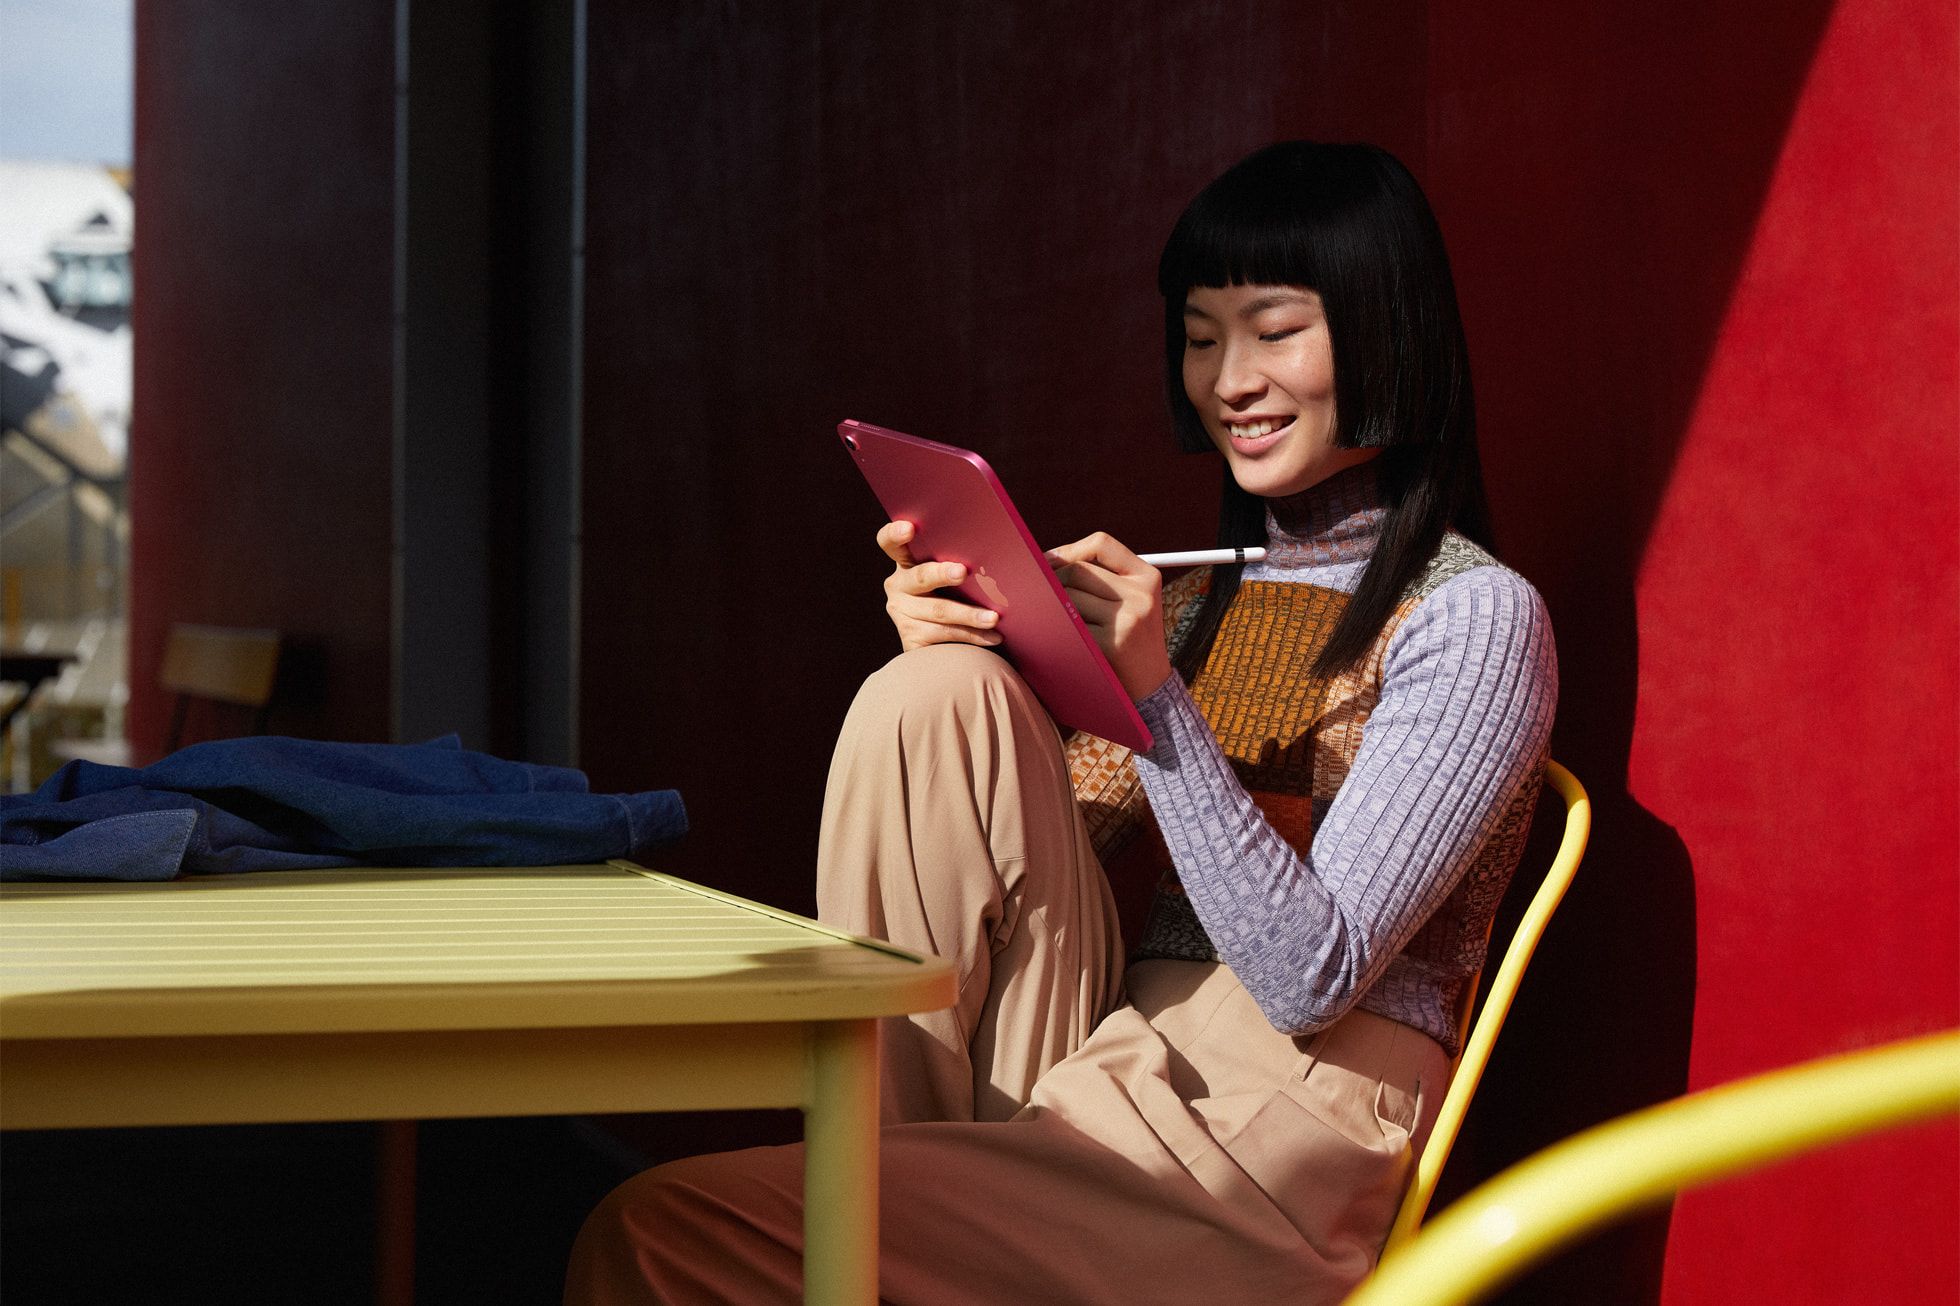 Uma pessoa está sentada em uma cadeira com fundo vermelho colorido segurando um iPad enquanto desenha nele e sorri.